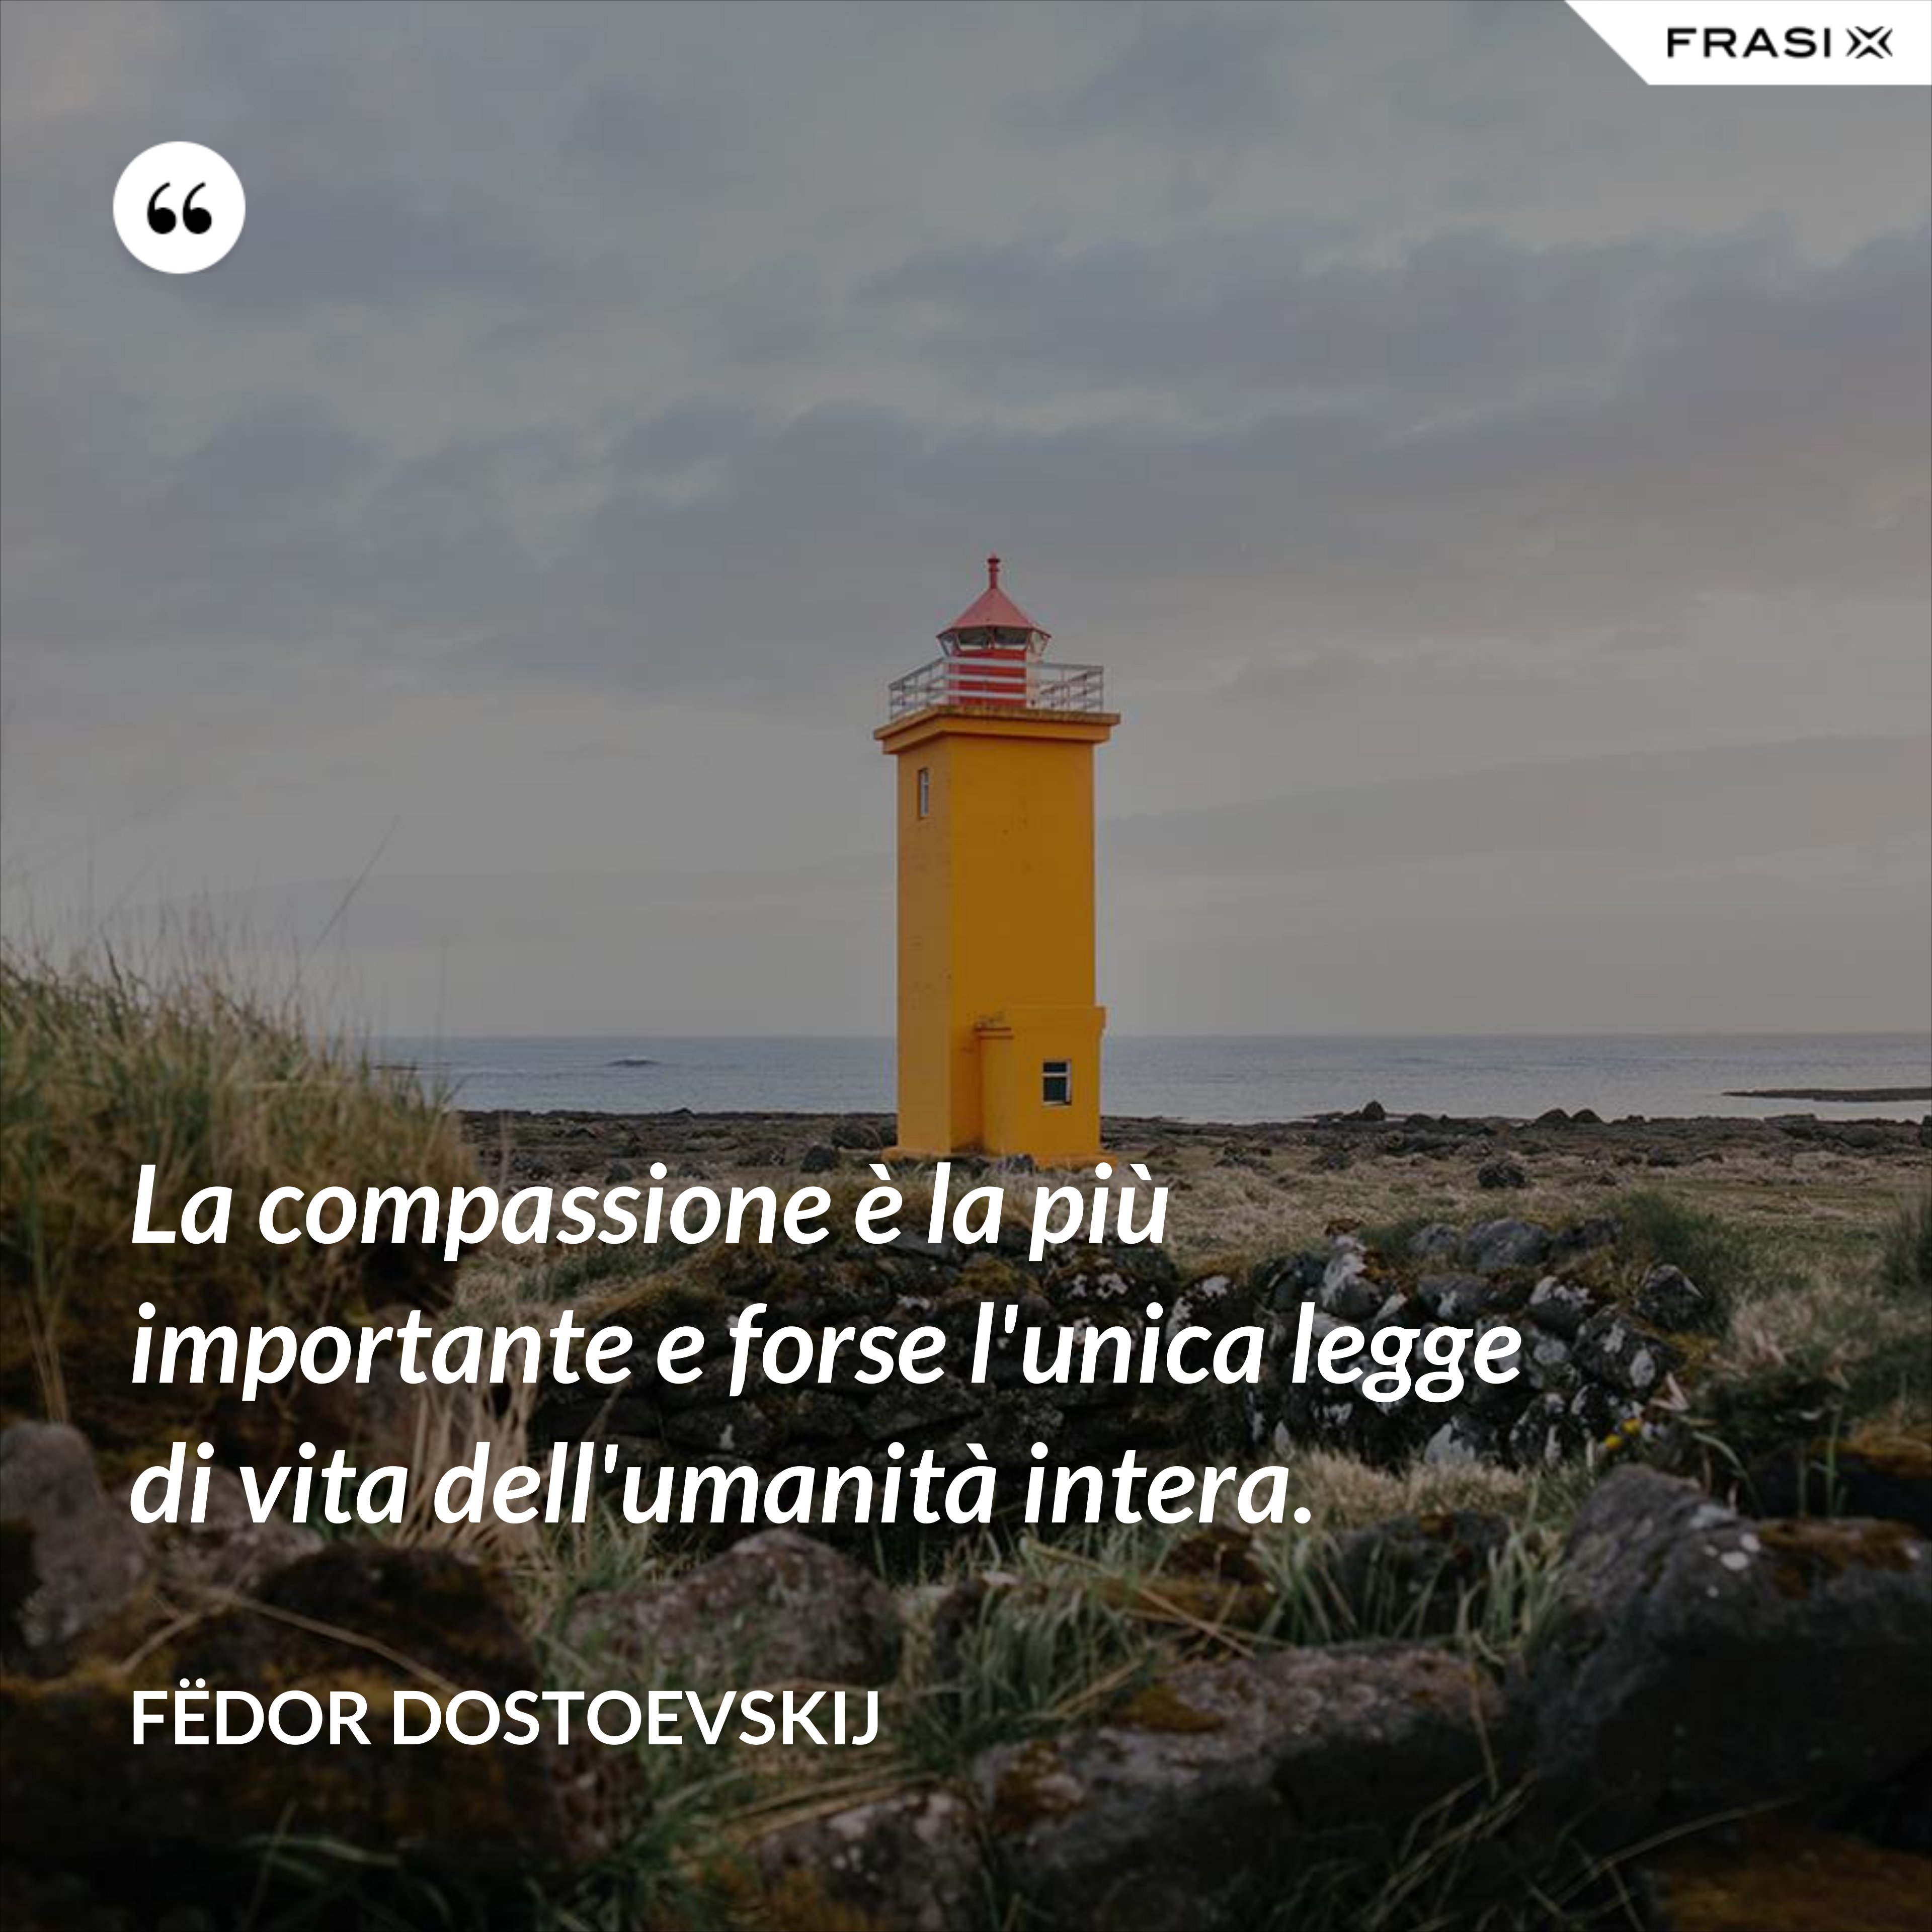 La compassione è la più importante e forse l'unica legge di vita dell'umanità intera. - Fëdor Dostoevskij